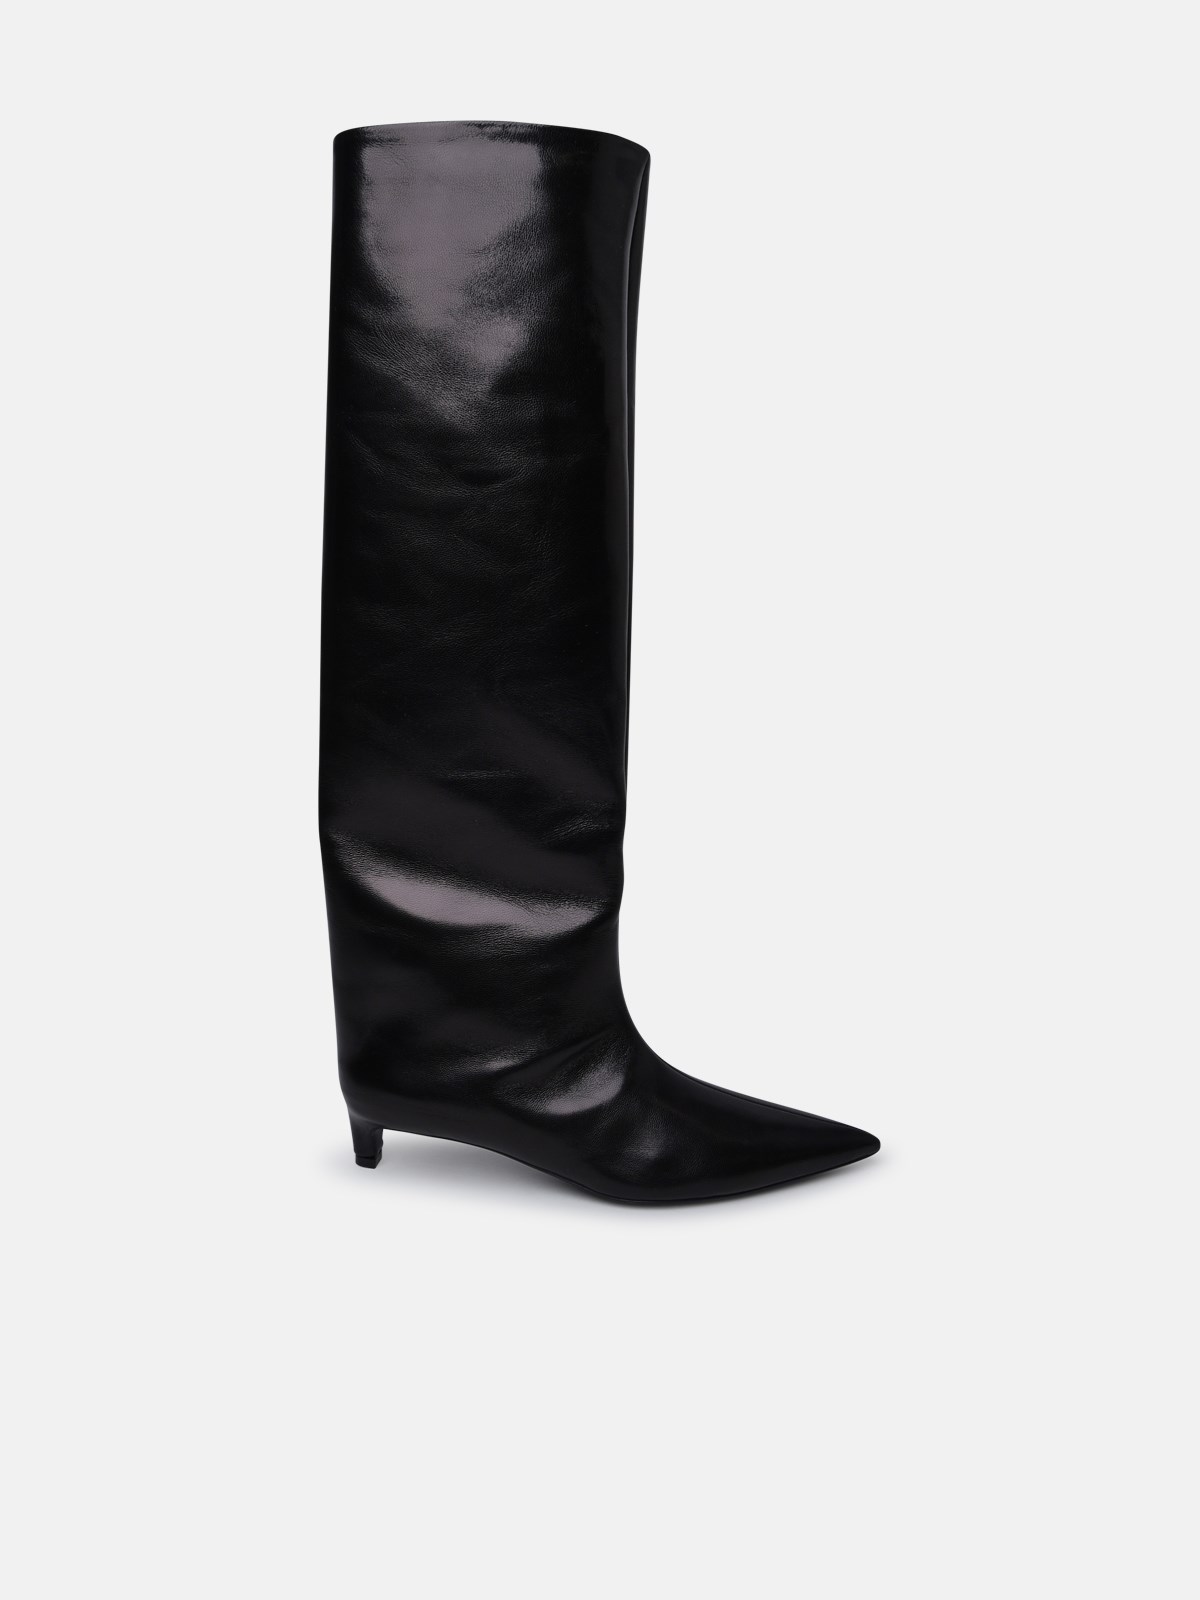 Jil Sander Black Leather Boots